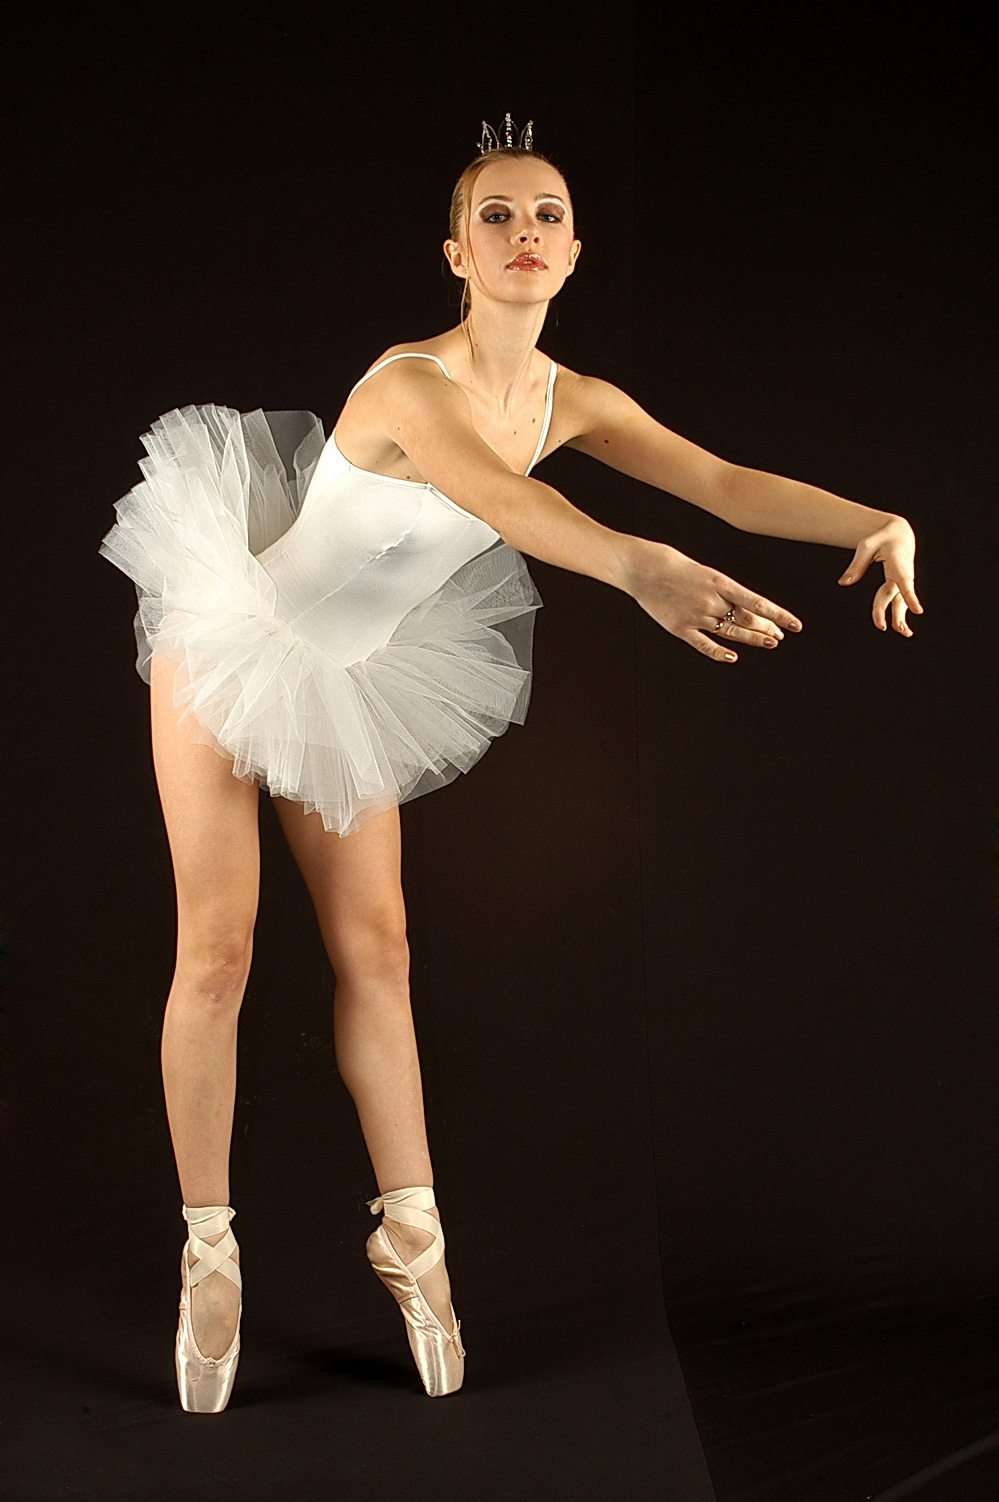 Avva.ballerina twitter